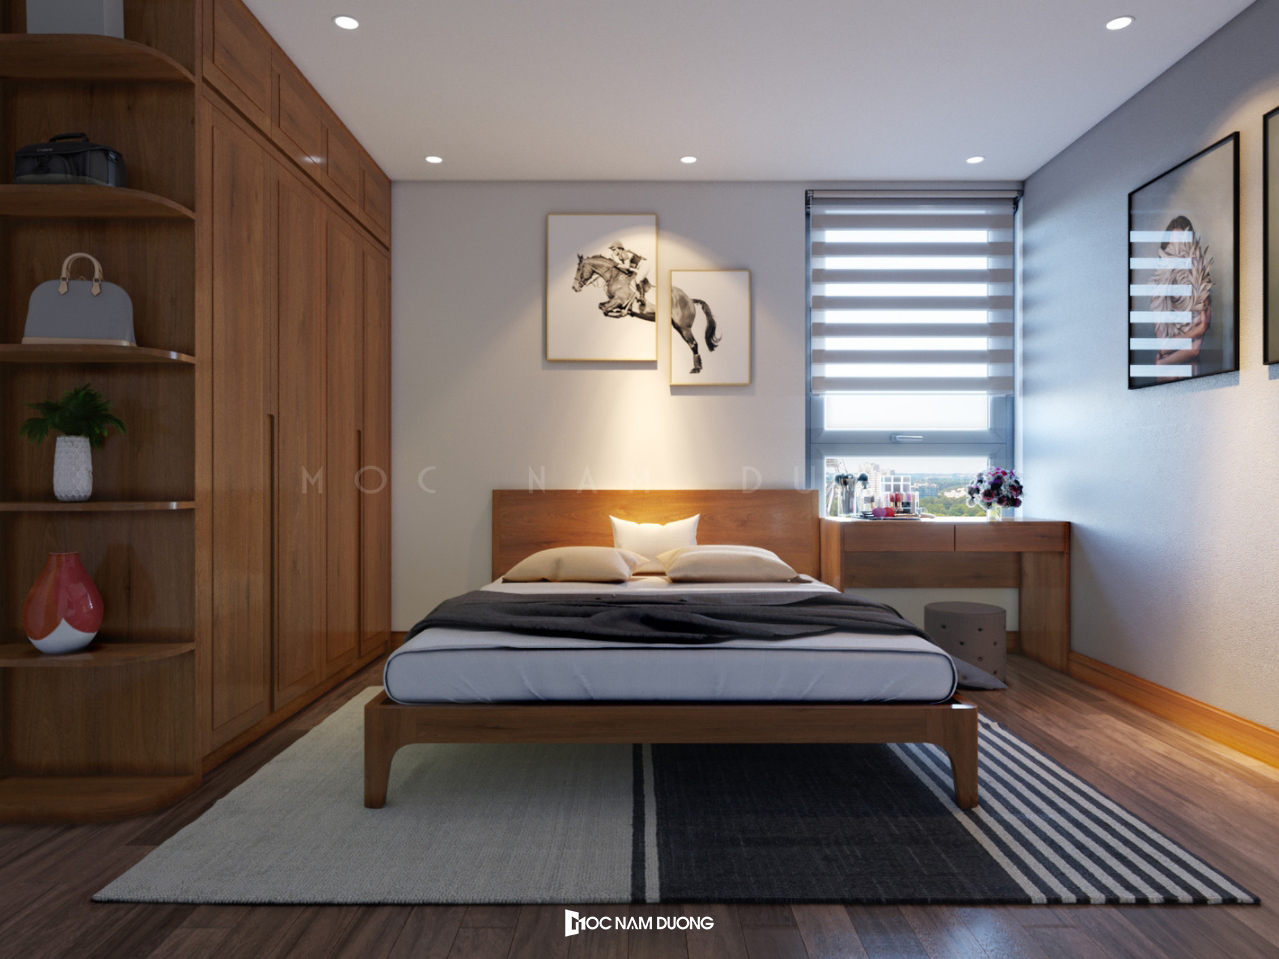 Giường ngủ gỗ óc chó đẹp thiết kế đơn giản, nhẹ nhàng